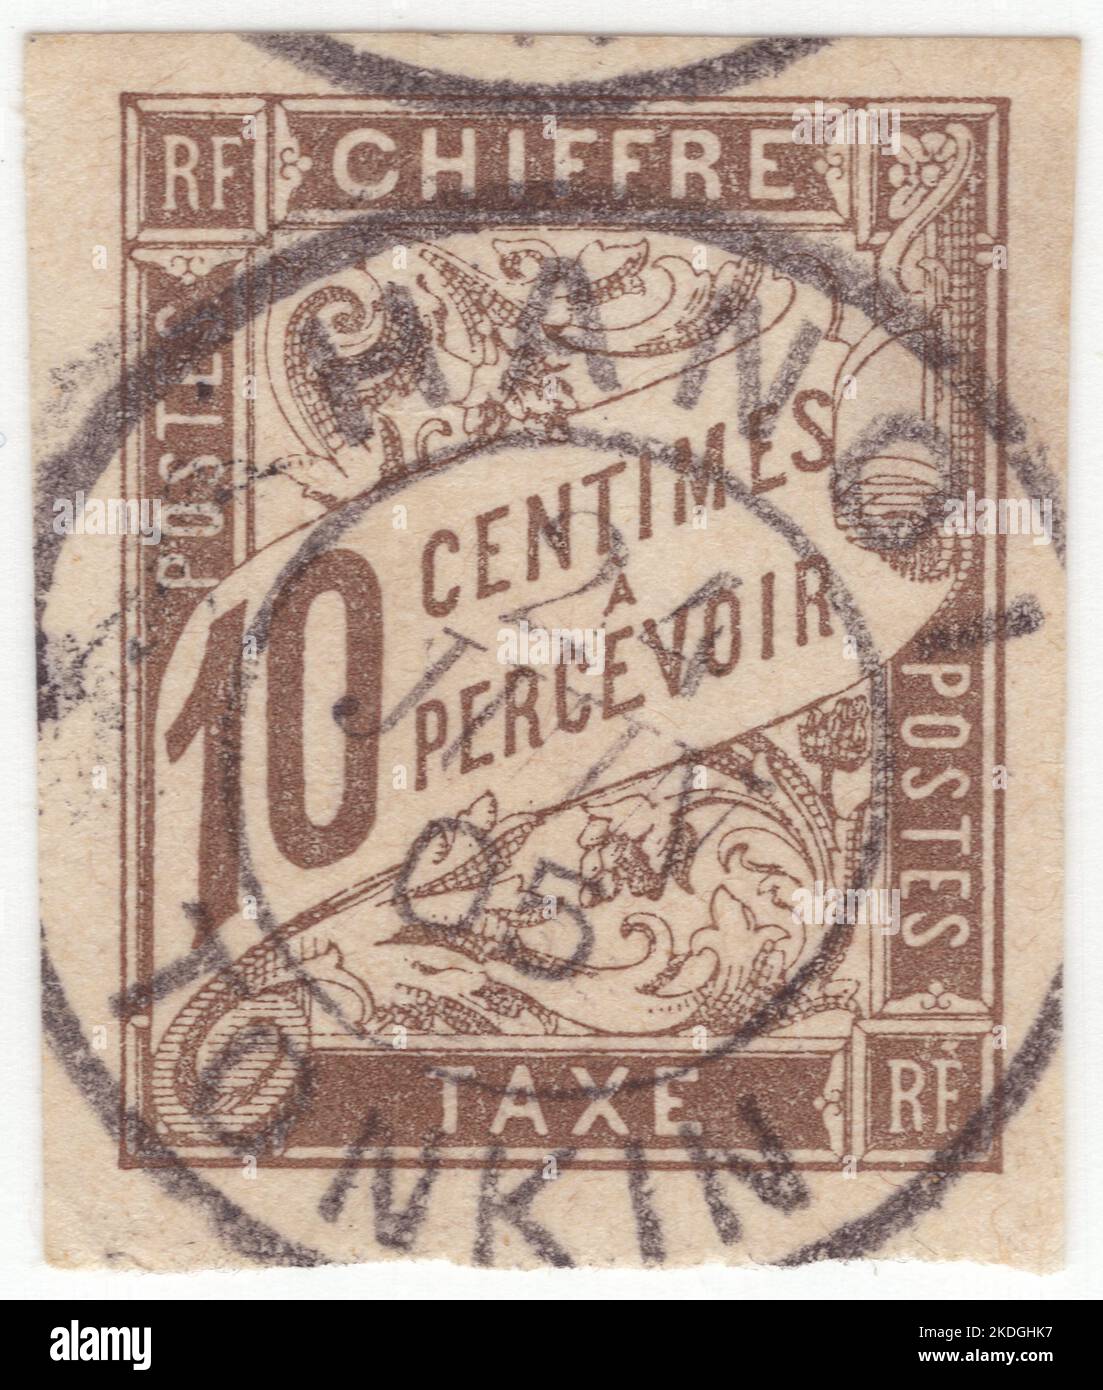 FRANZÖSISCHE KOLONIEN - 1894: Ein 10 Centimes grau-brauner Briefmarke mit Zahlen und floralem Ornament Stockfoto